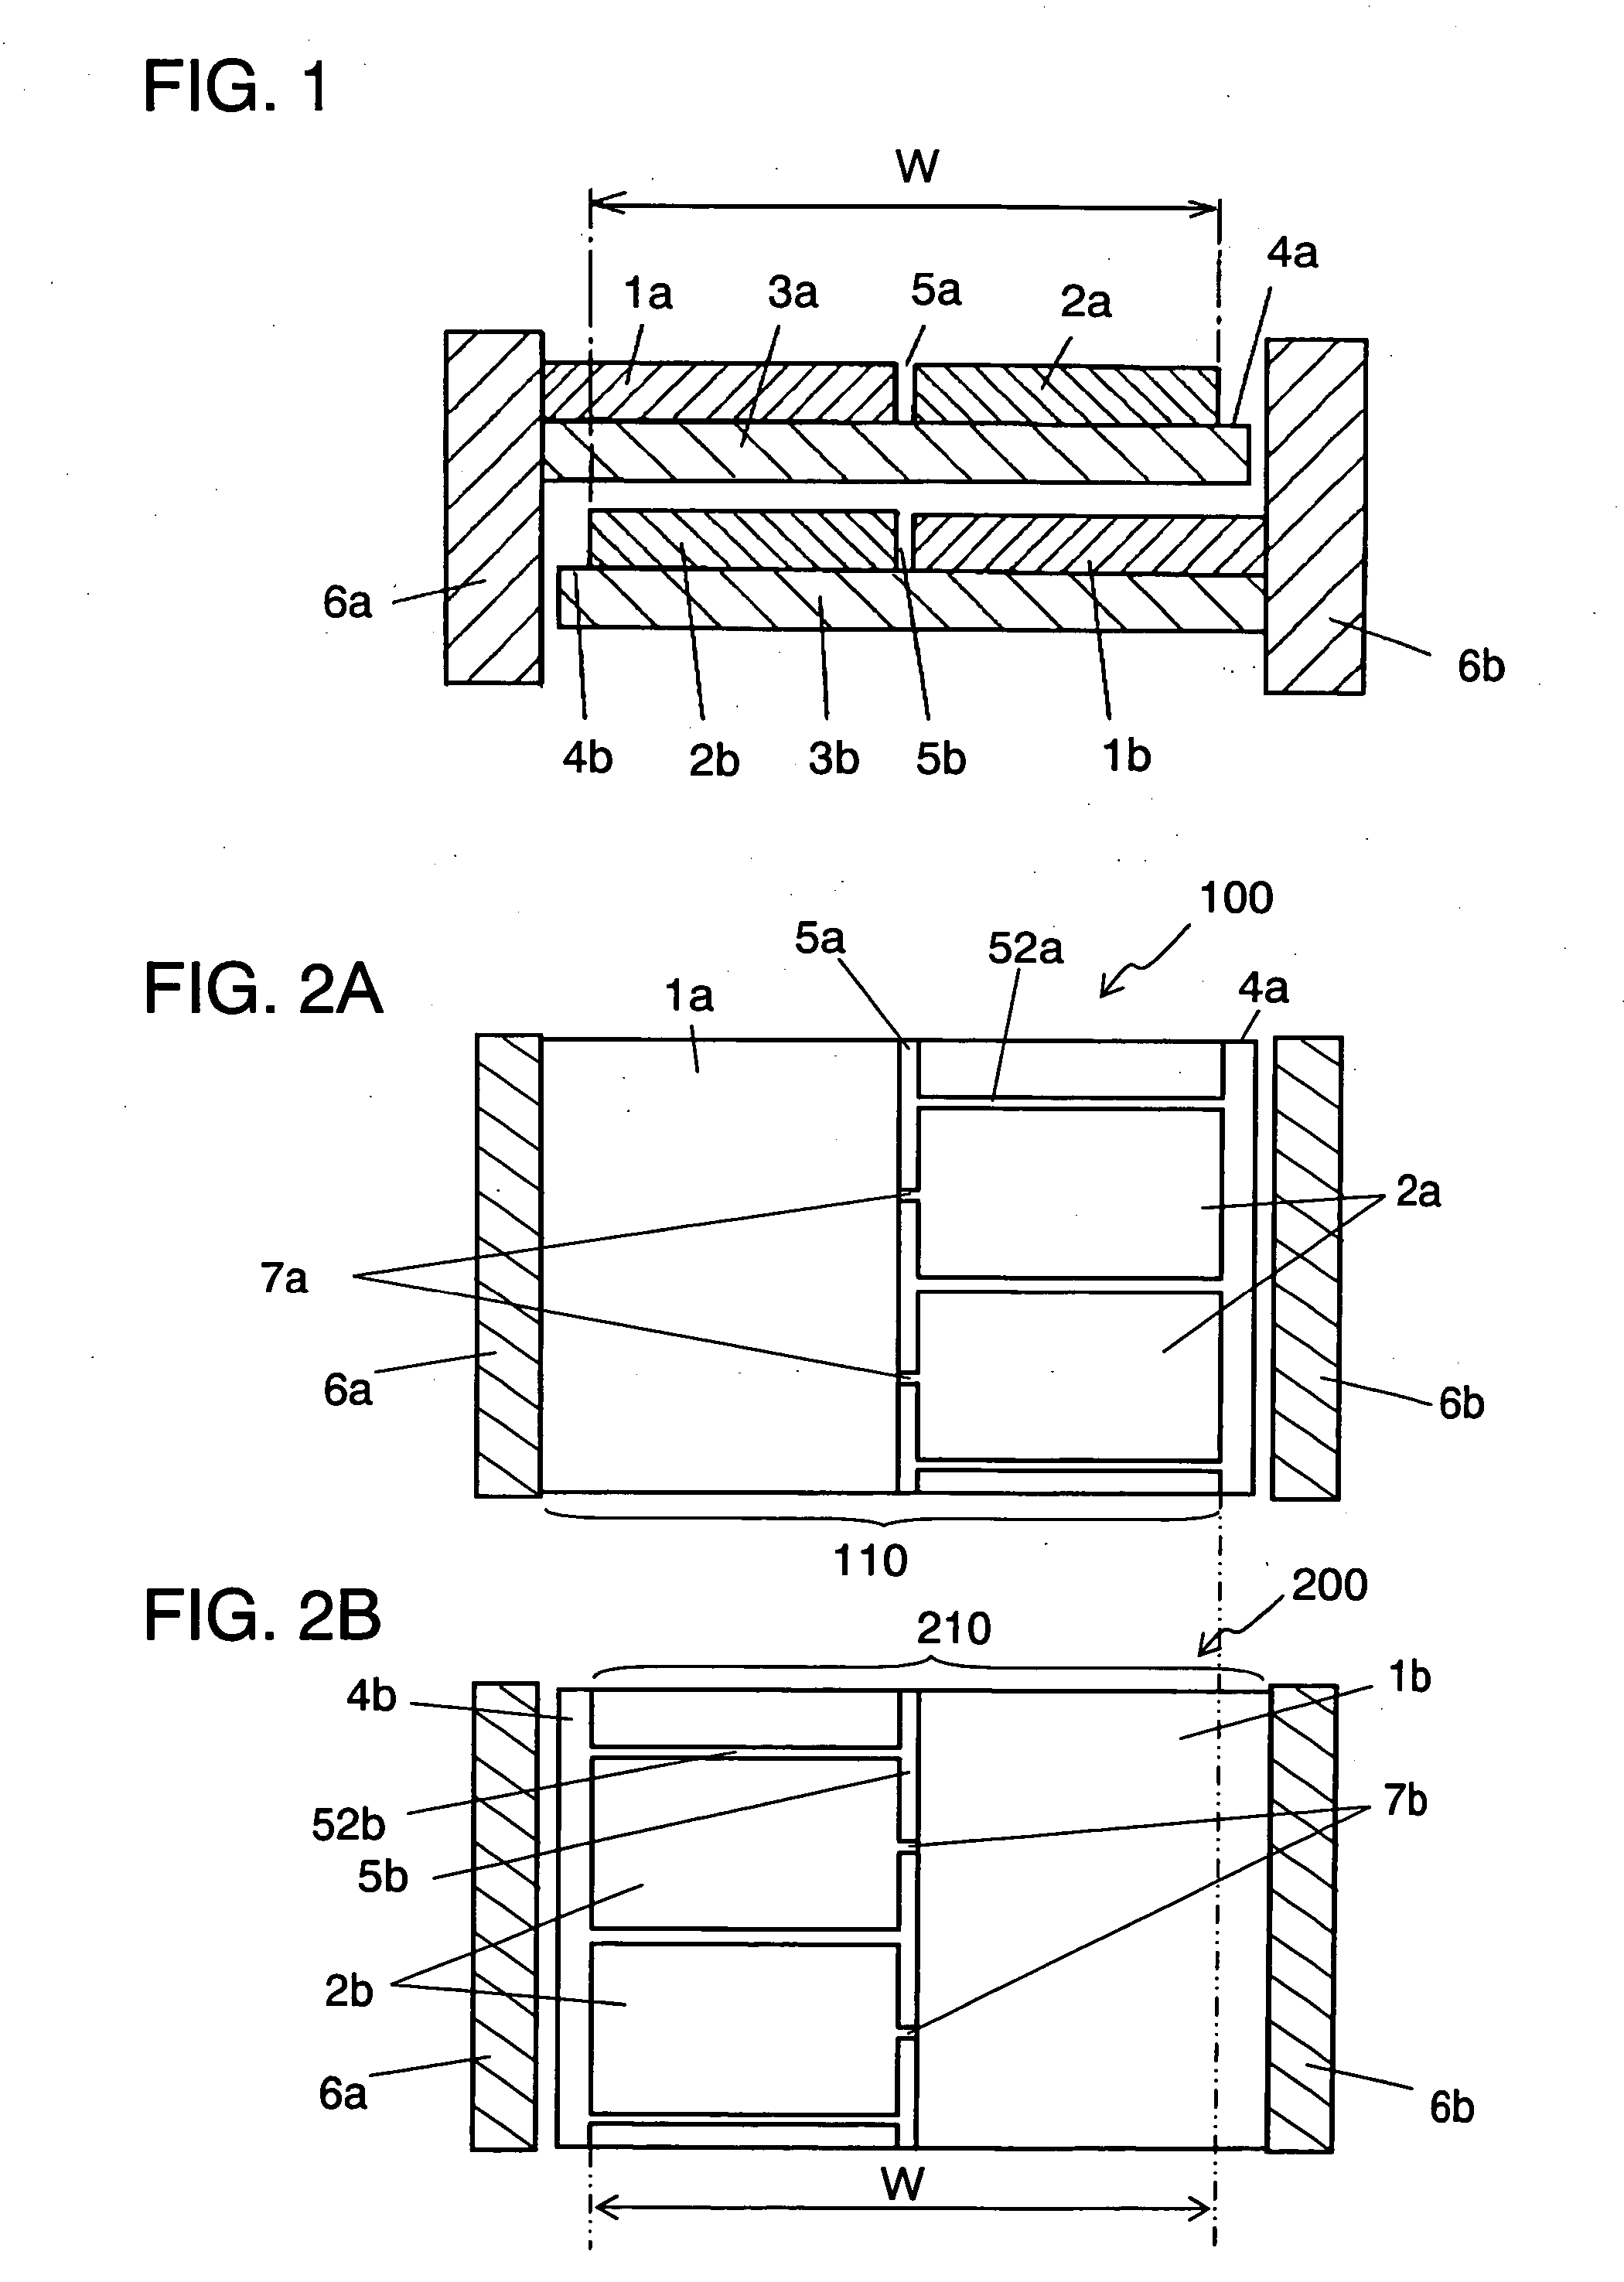 Metallized film capacitor